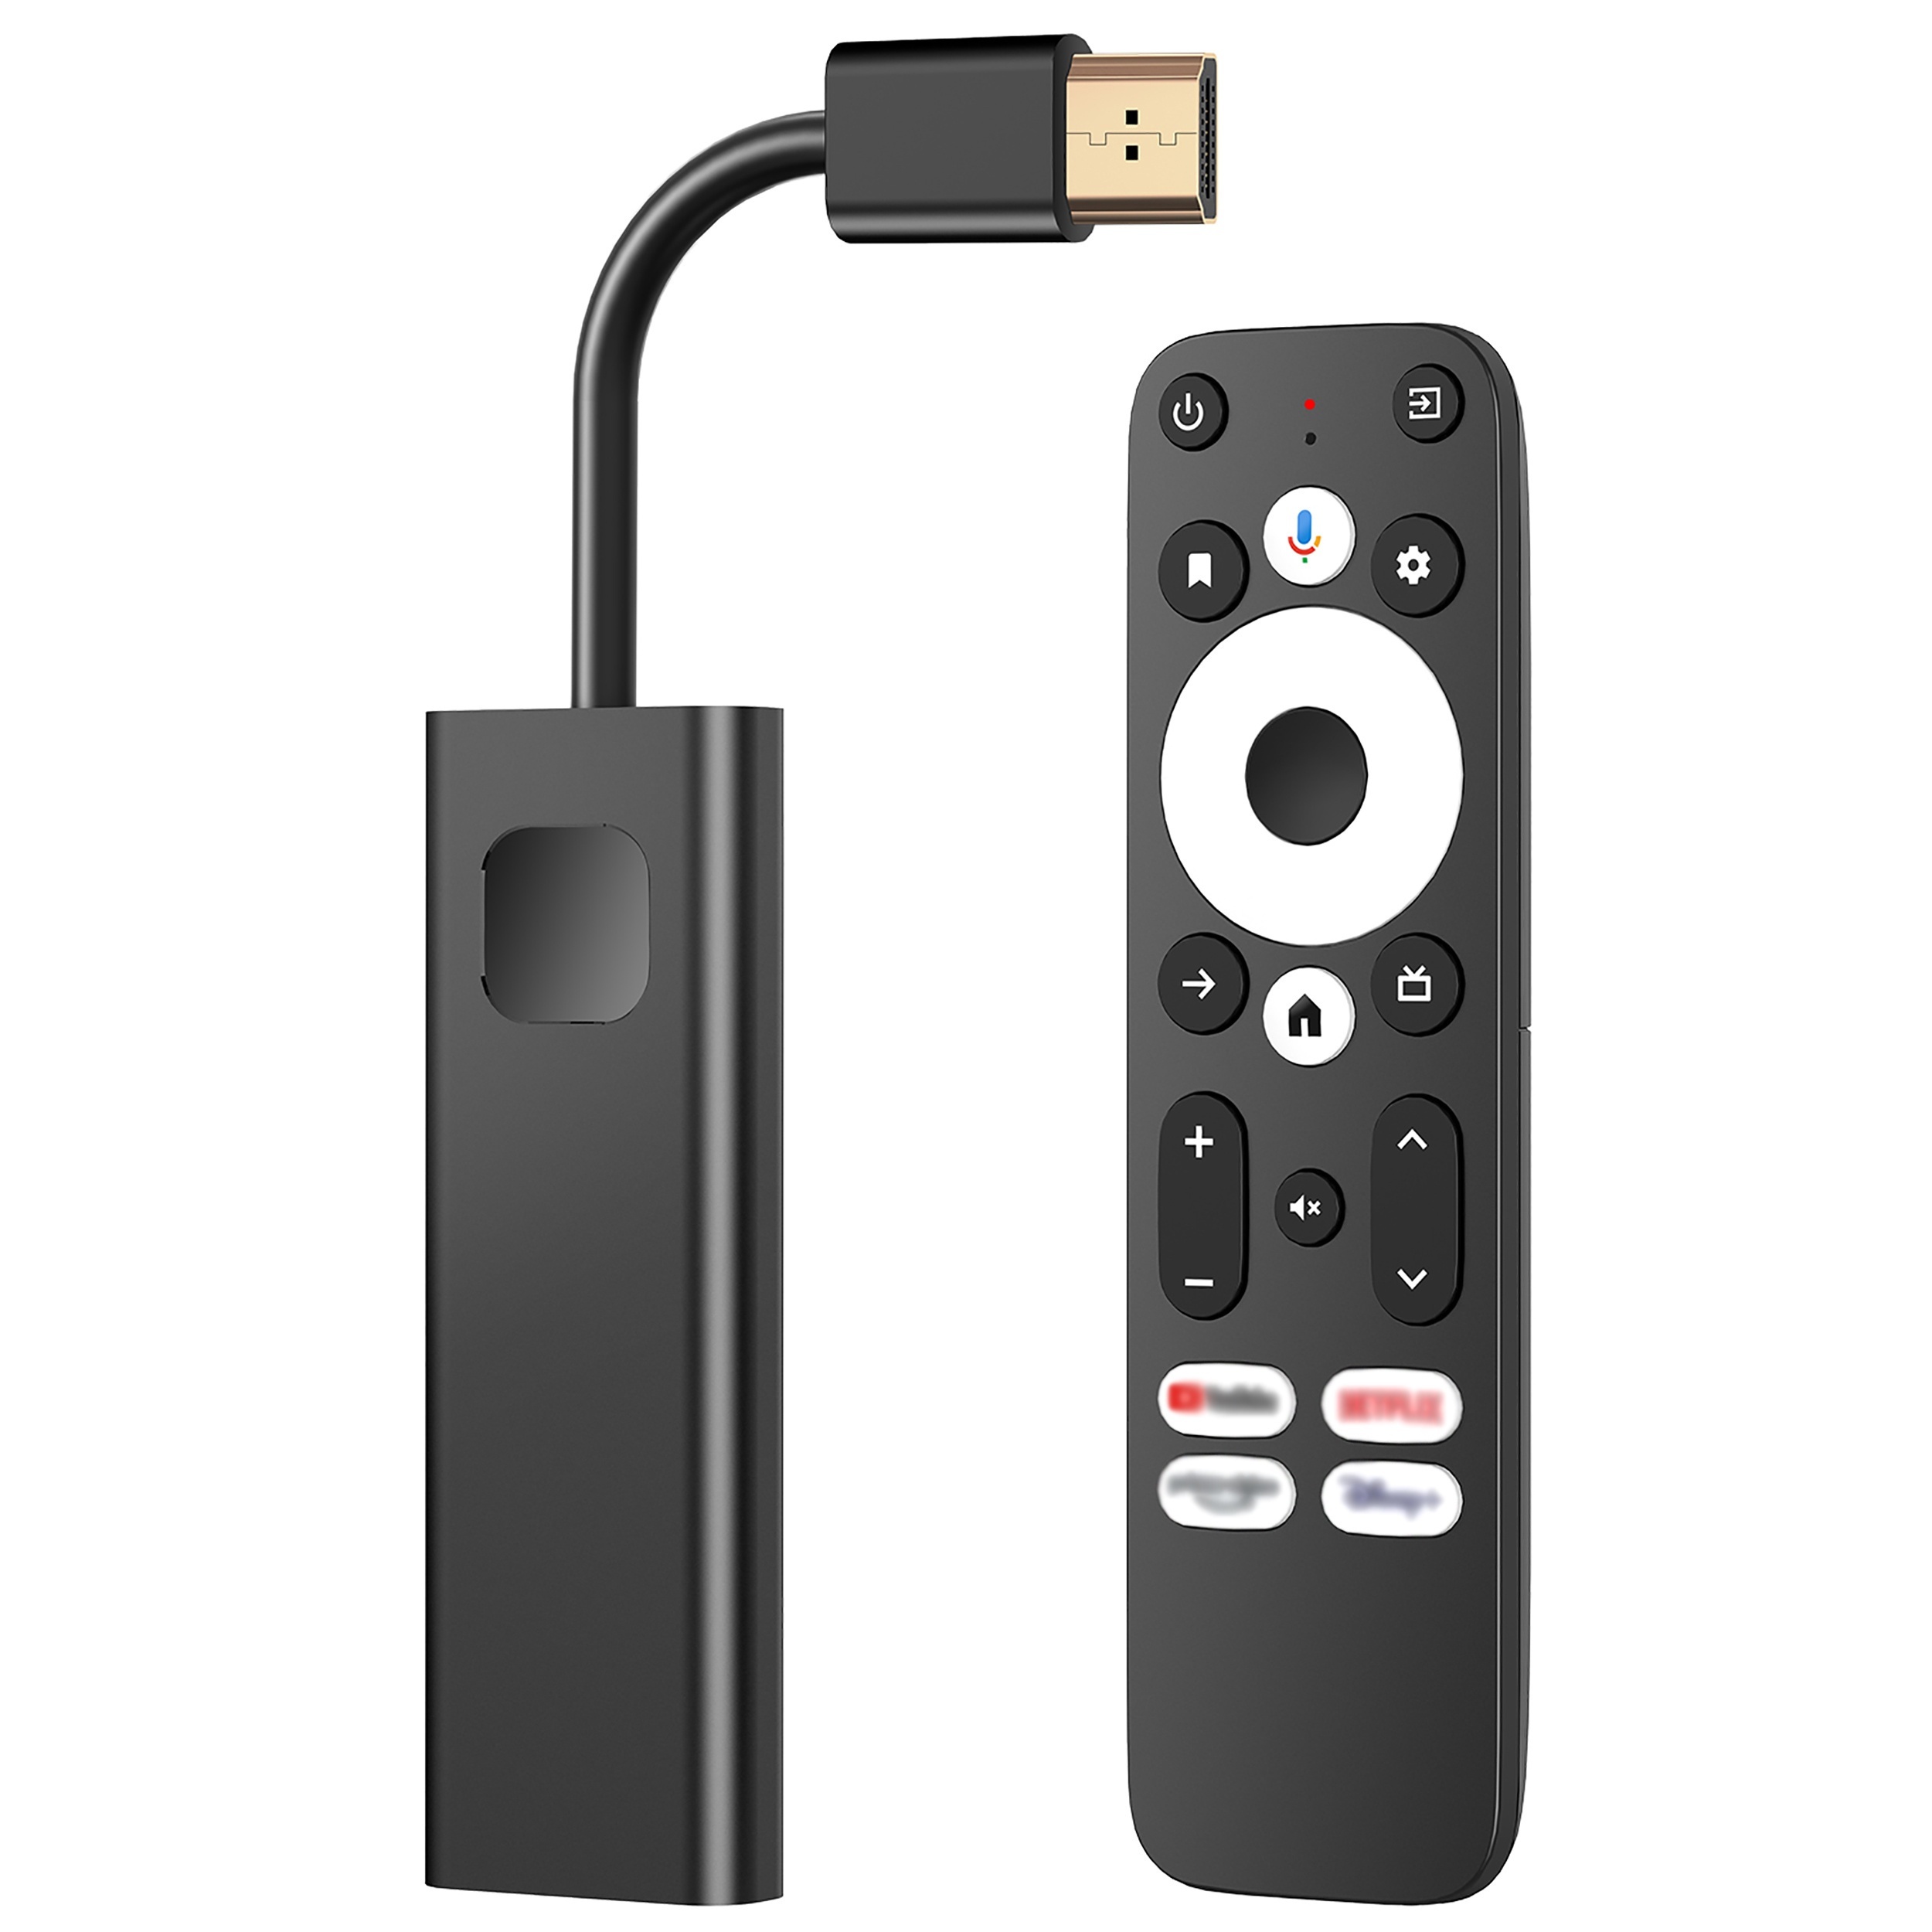 Xiaomi Mi TV Stick Full HD 8GB c/Control Netflix 